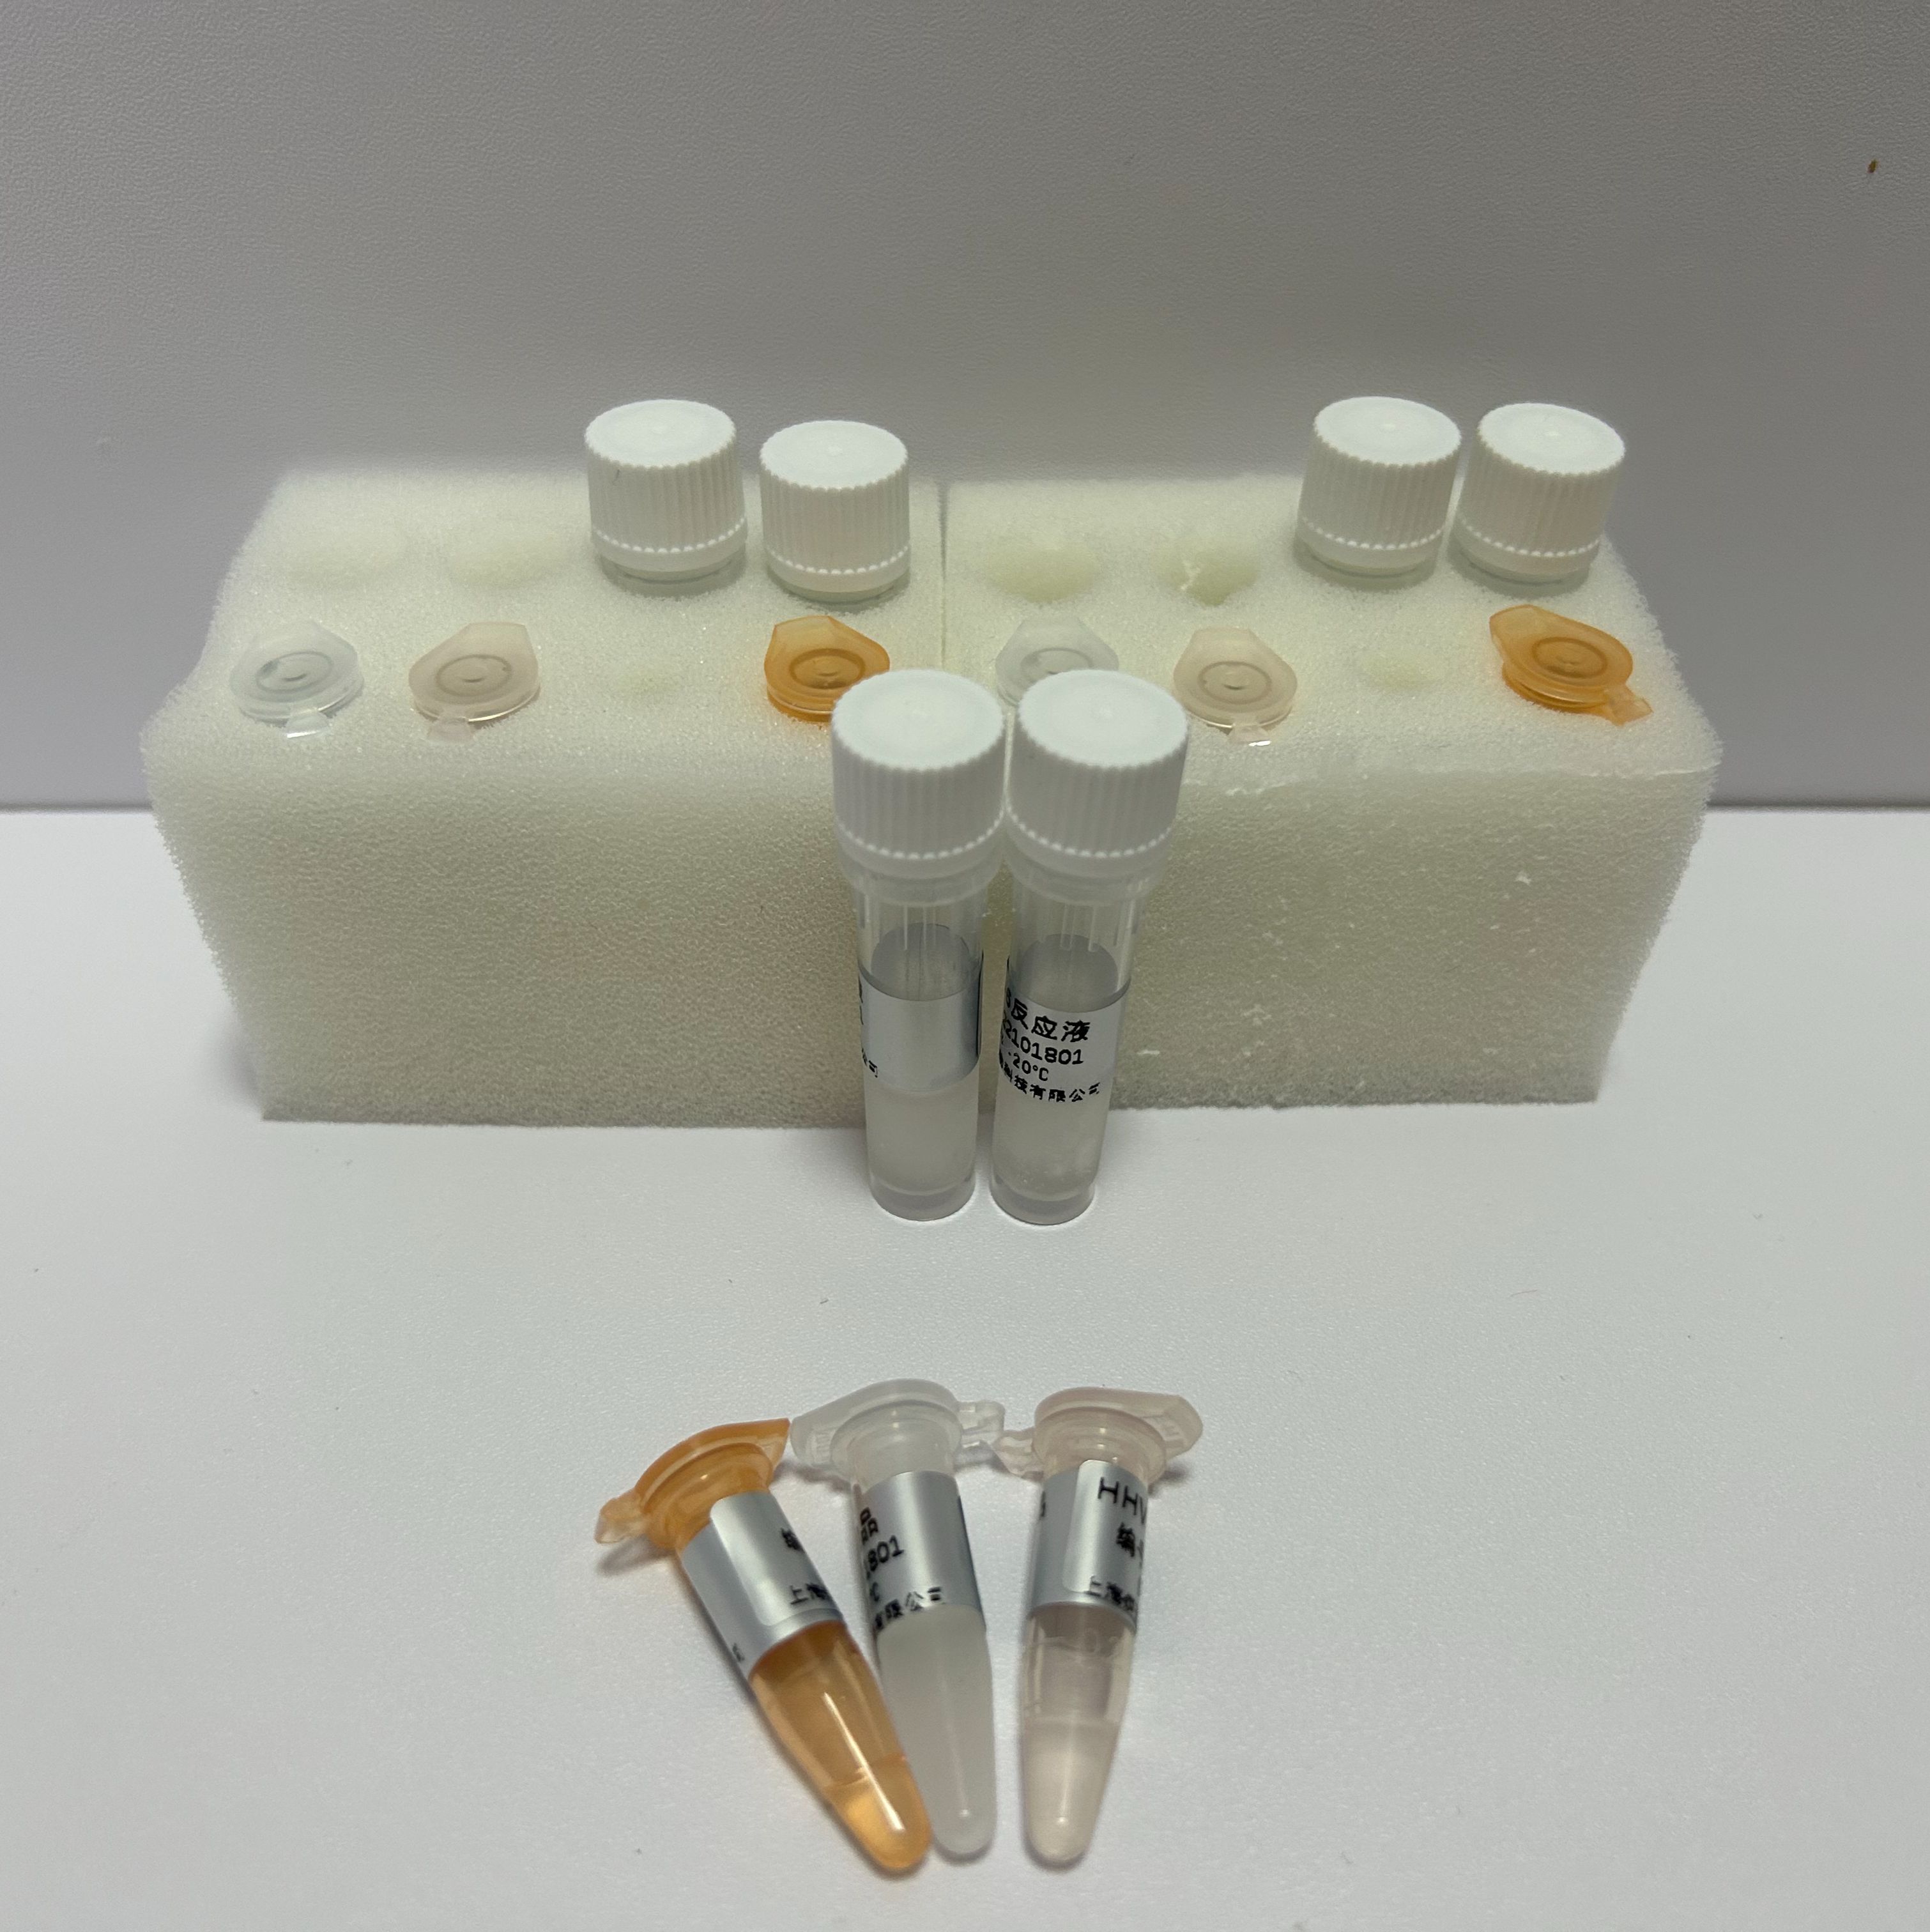 放线菌属通用PCR试剂盒